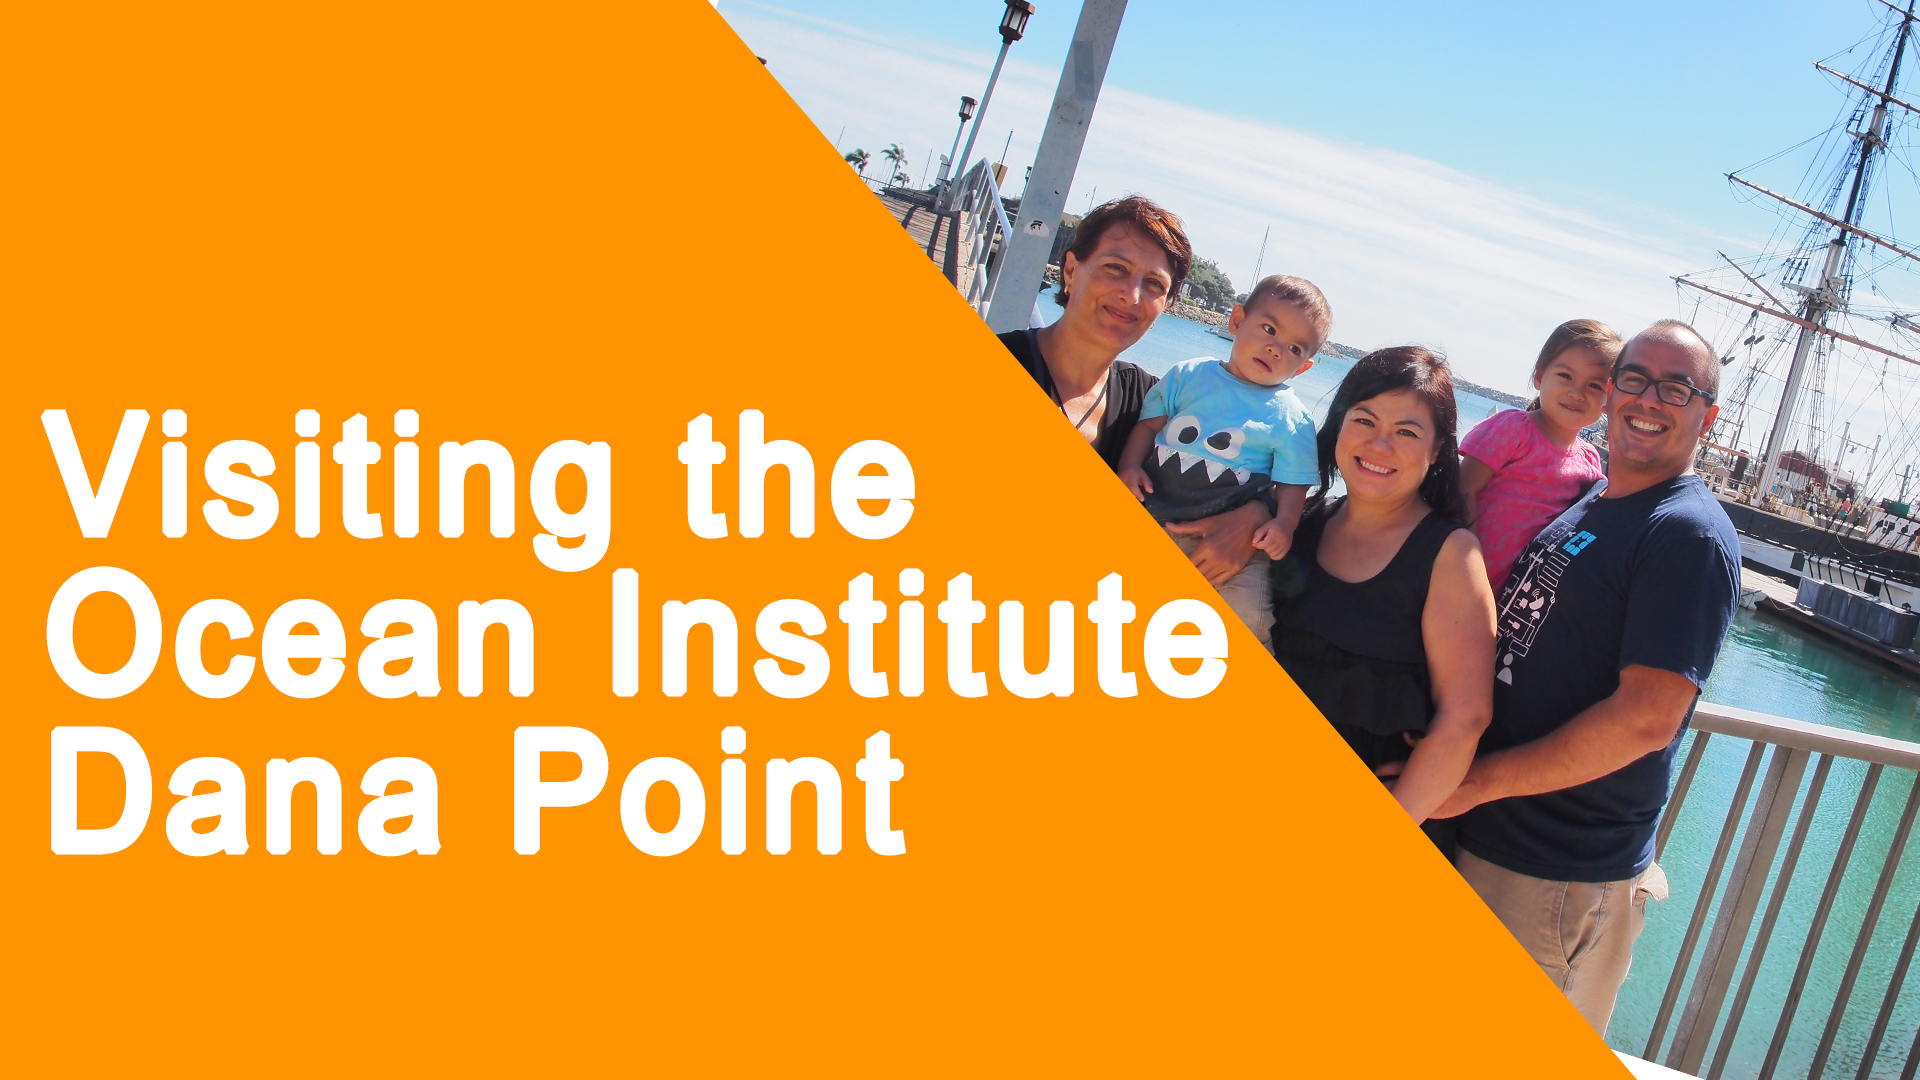 Dana point ocean institute jobs